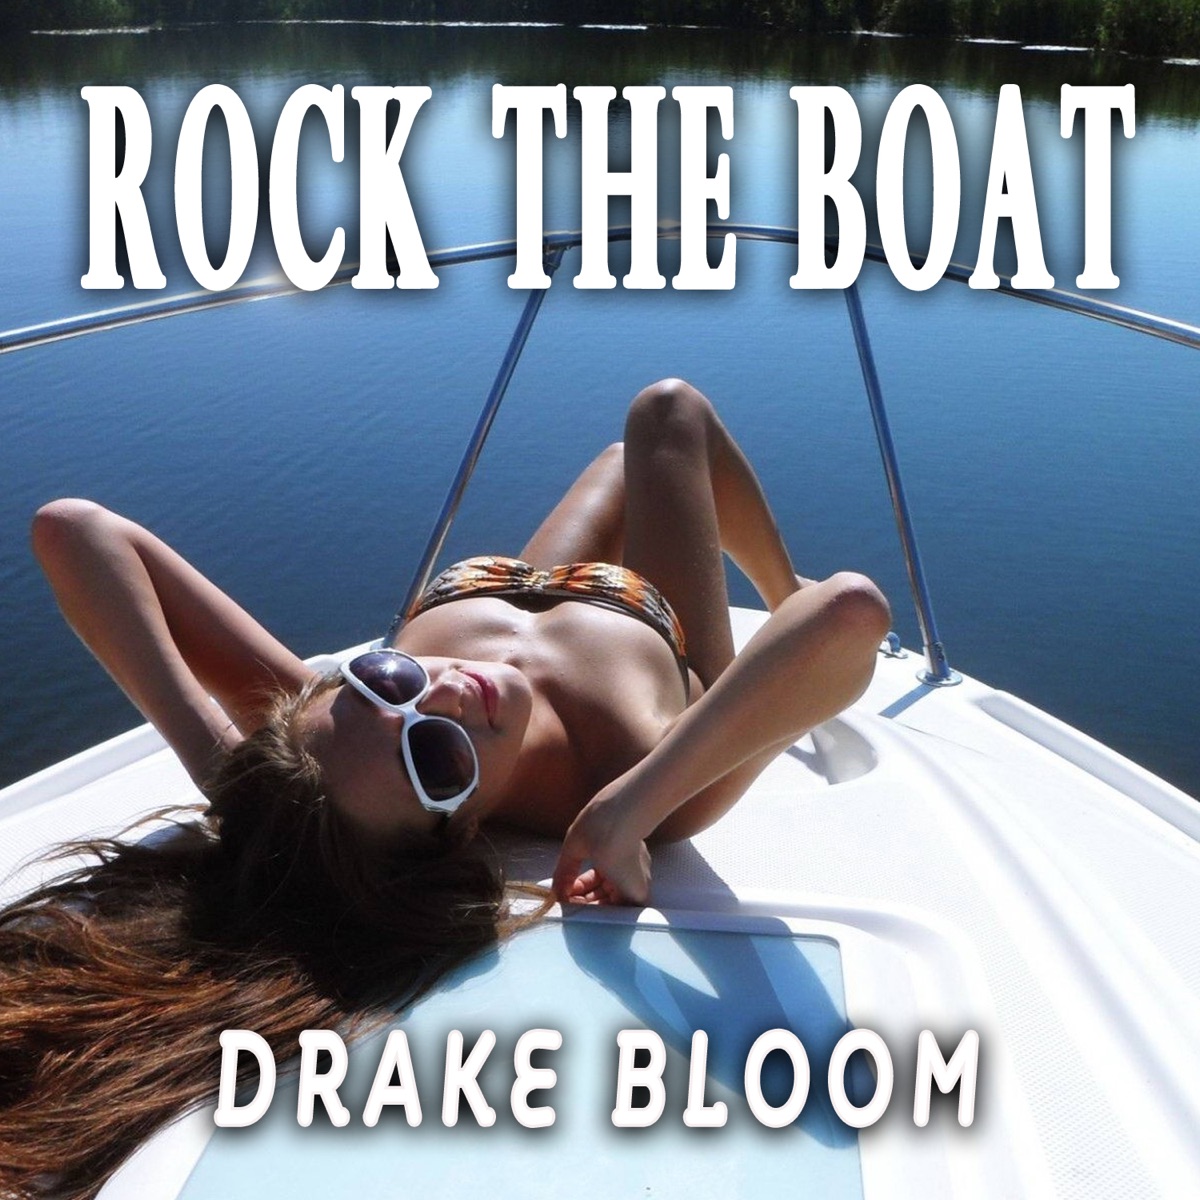 clinton grubbs recommends rock the boat bikini pic